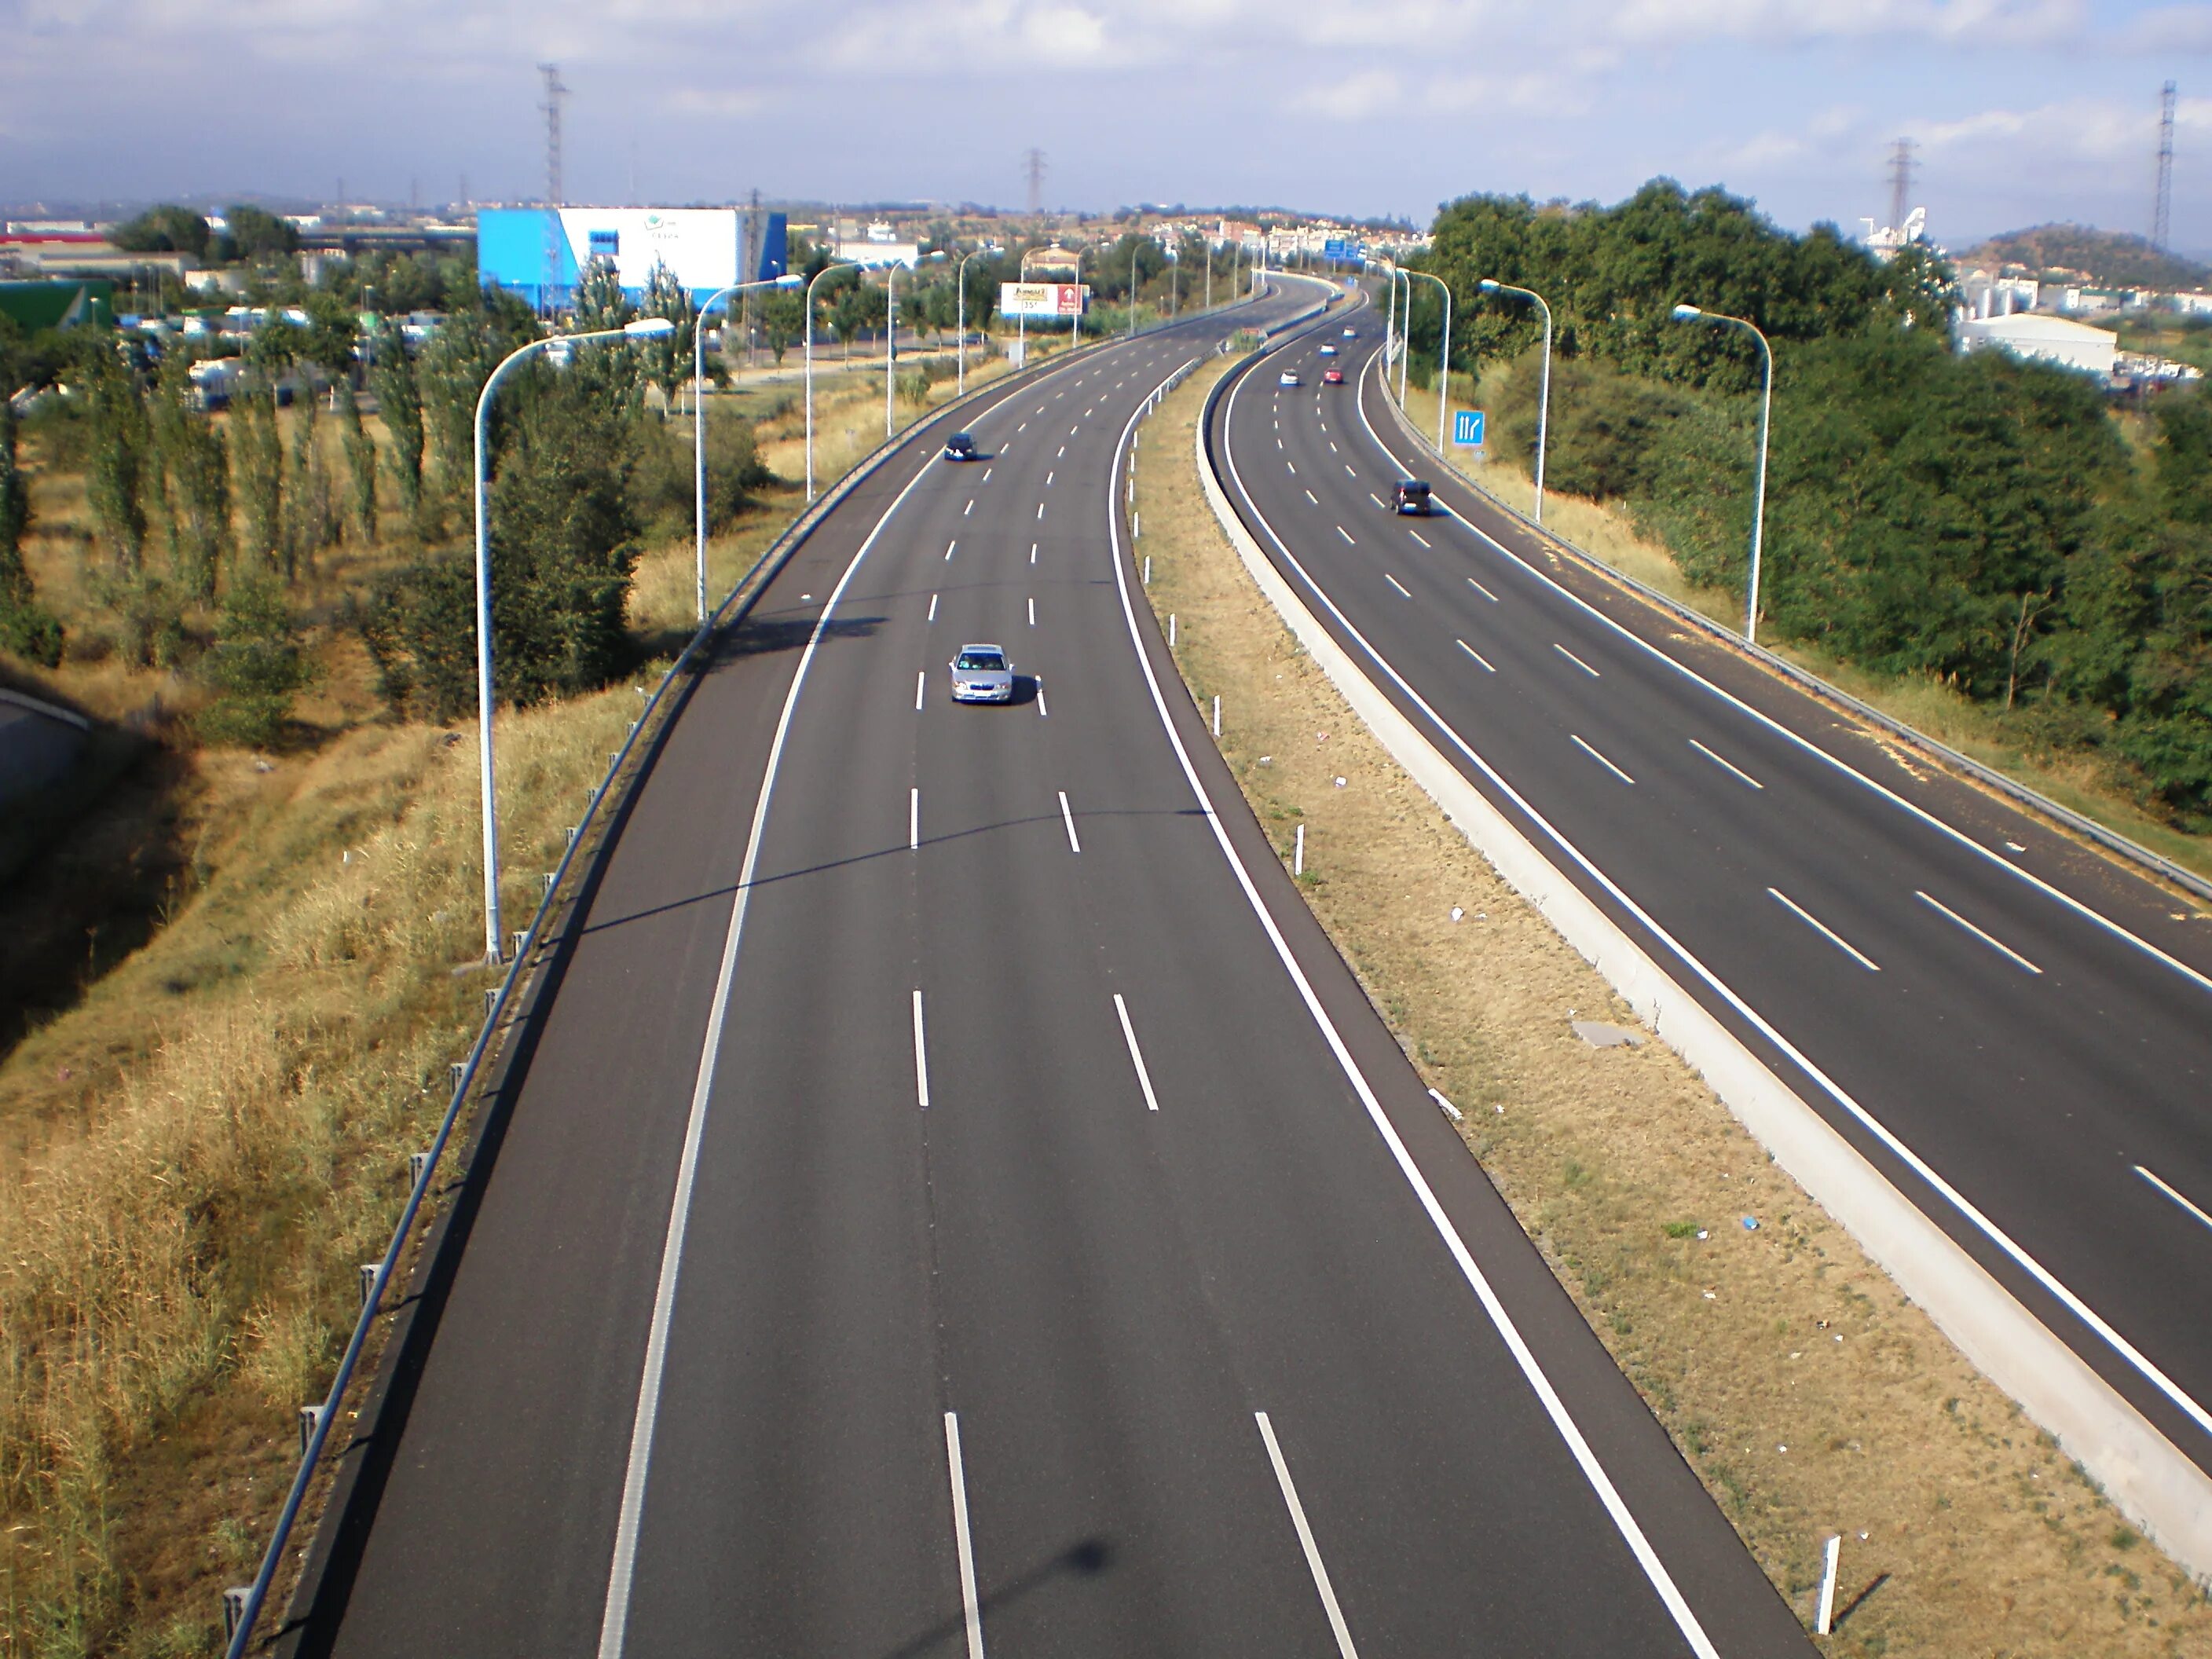 Дорога шоссейного типа как называется. Автострады Испании. Автомагистраль. Автомагистраль с машинами. Трасса в испаний.